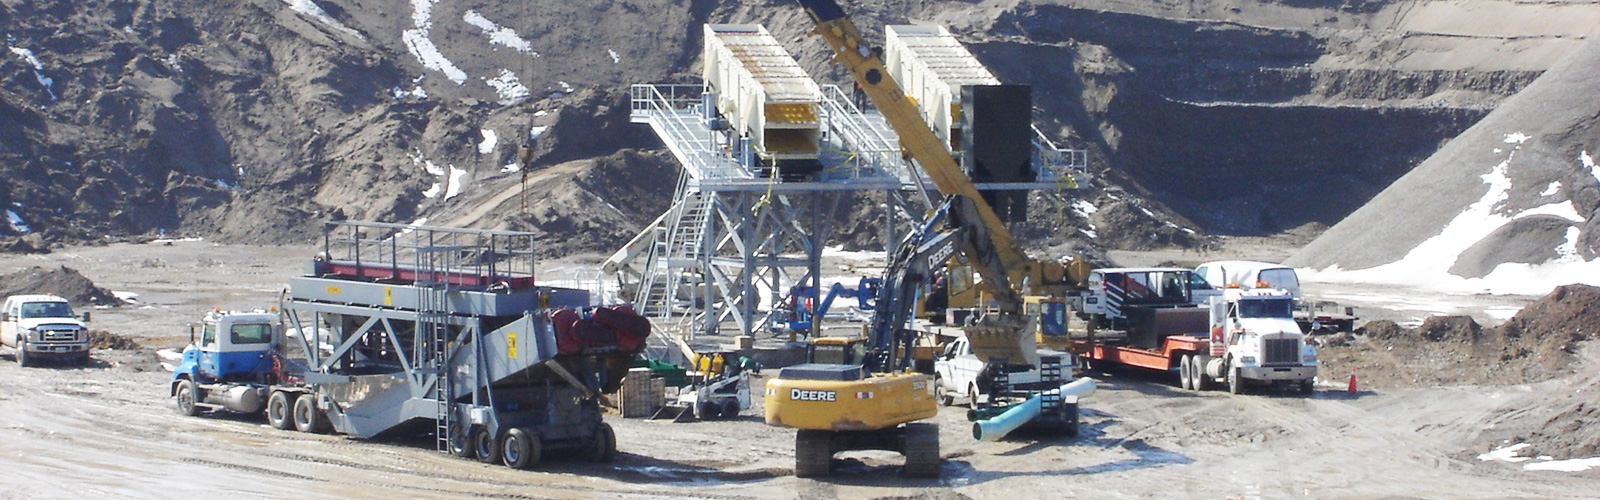 equipment-conveyors